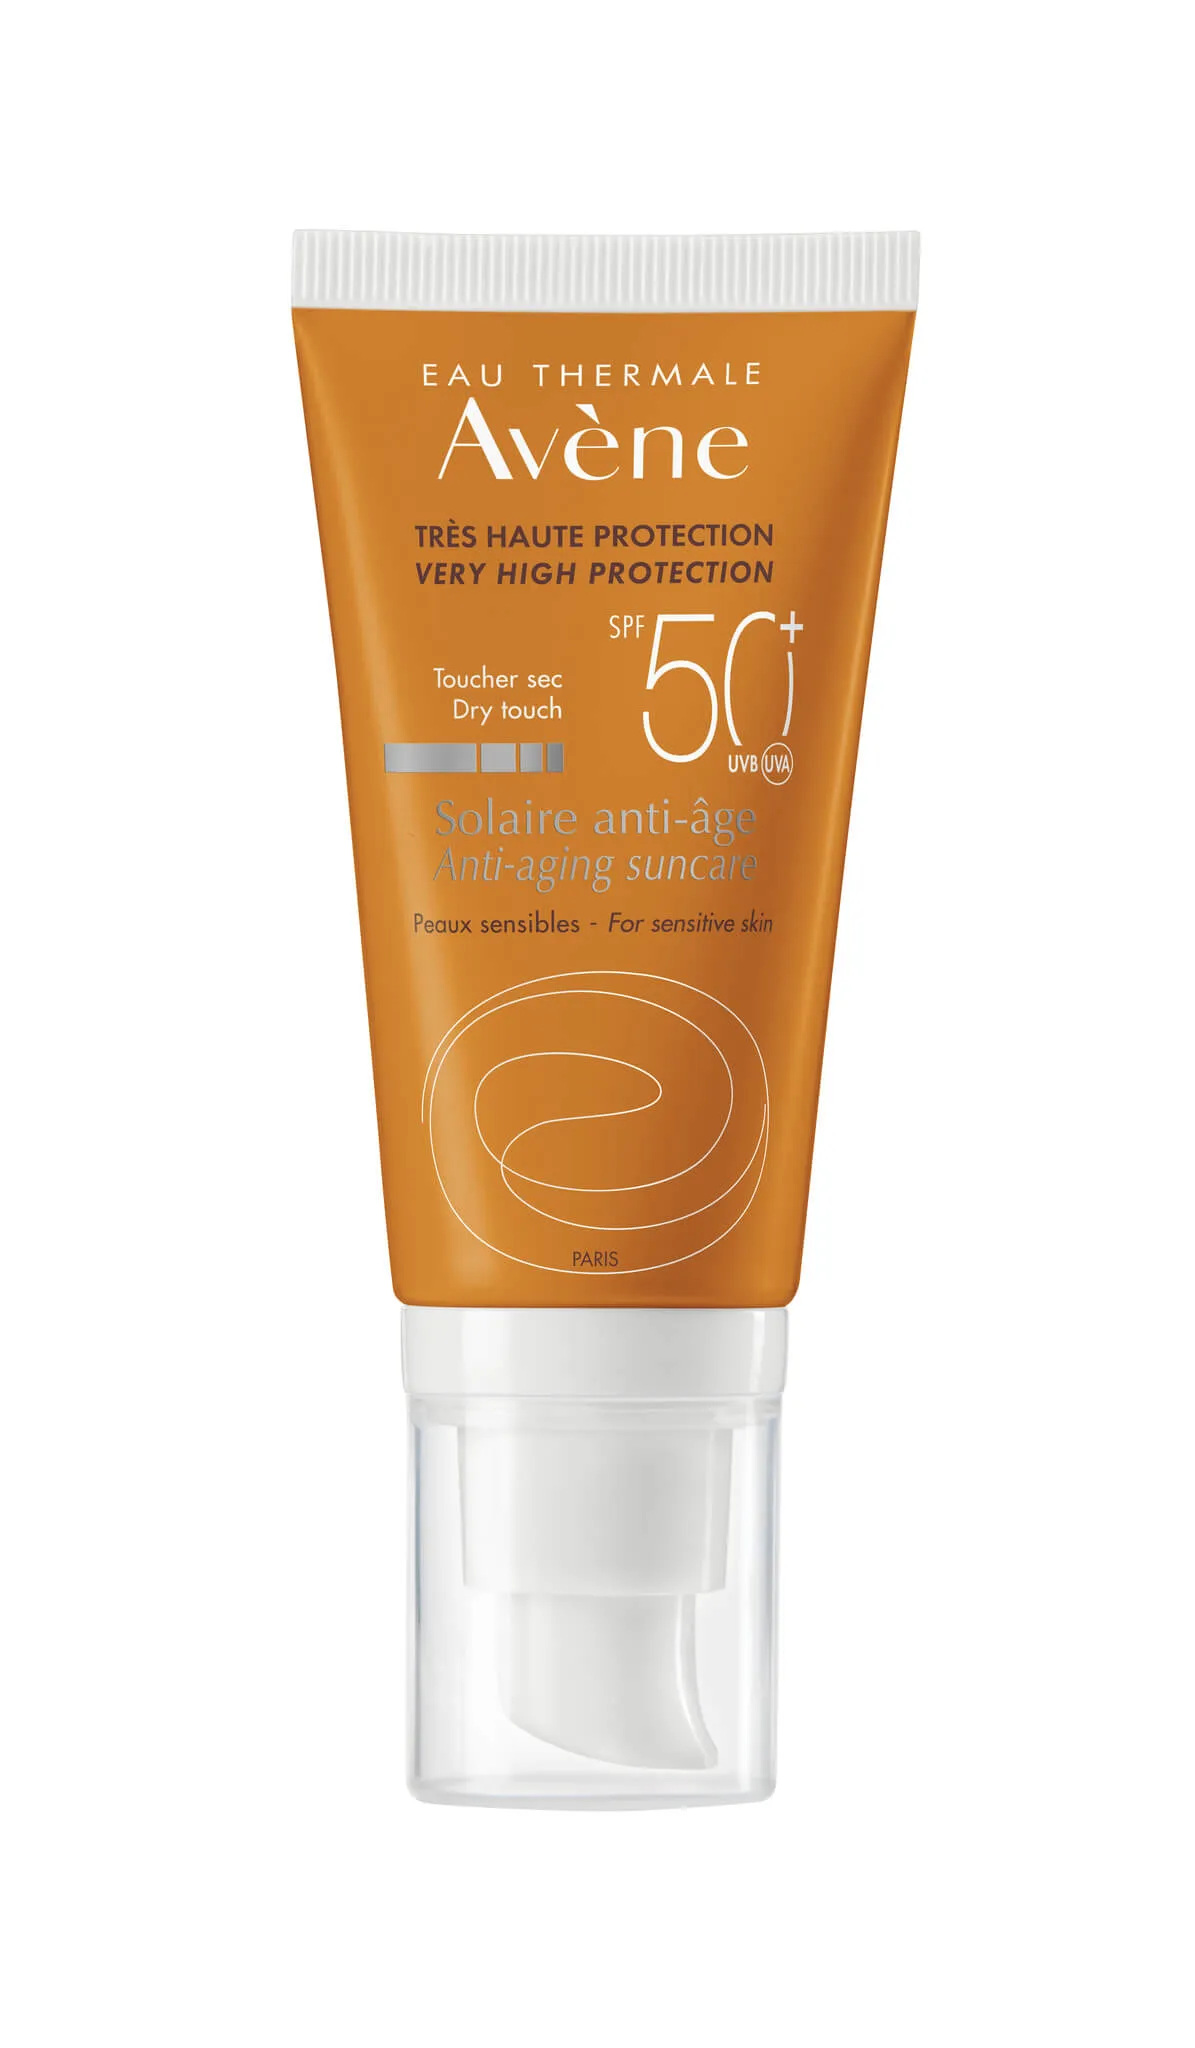 Avene Sun, krem anti-aging, bardzo wysoka ochrona przeciwsłoneczna, SPF 50+, 50 ml